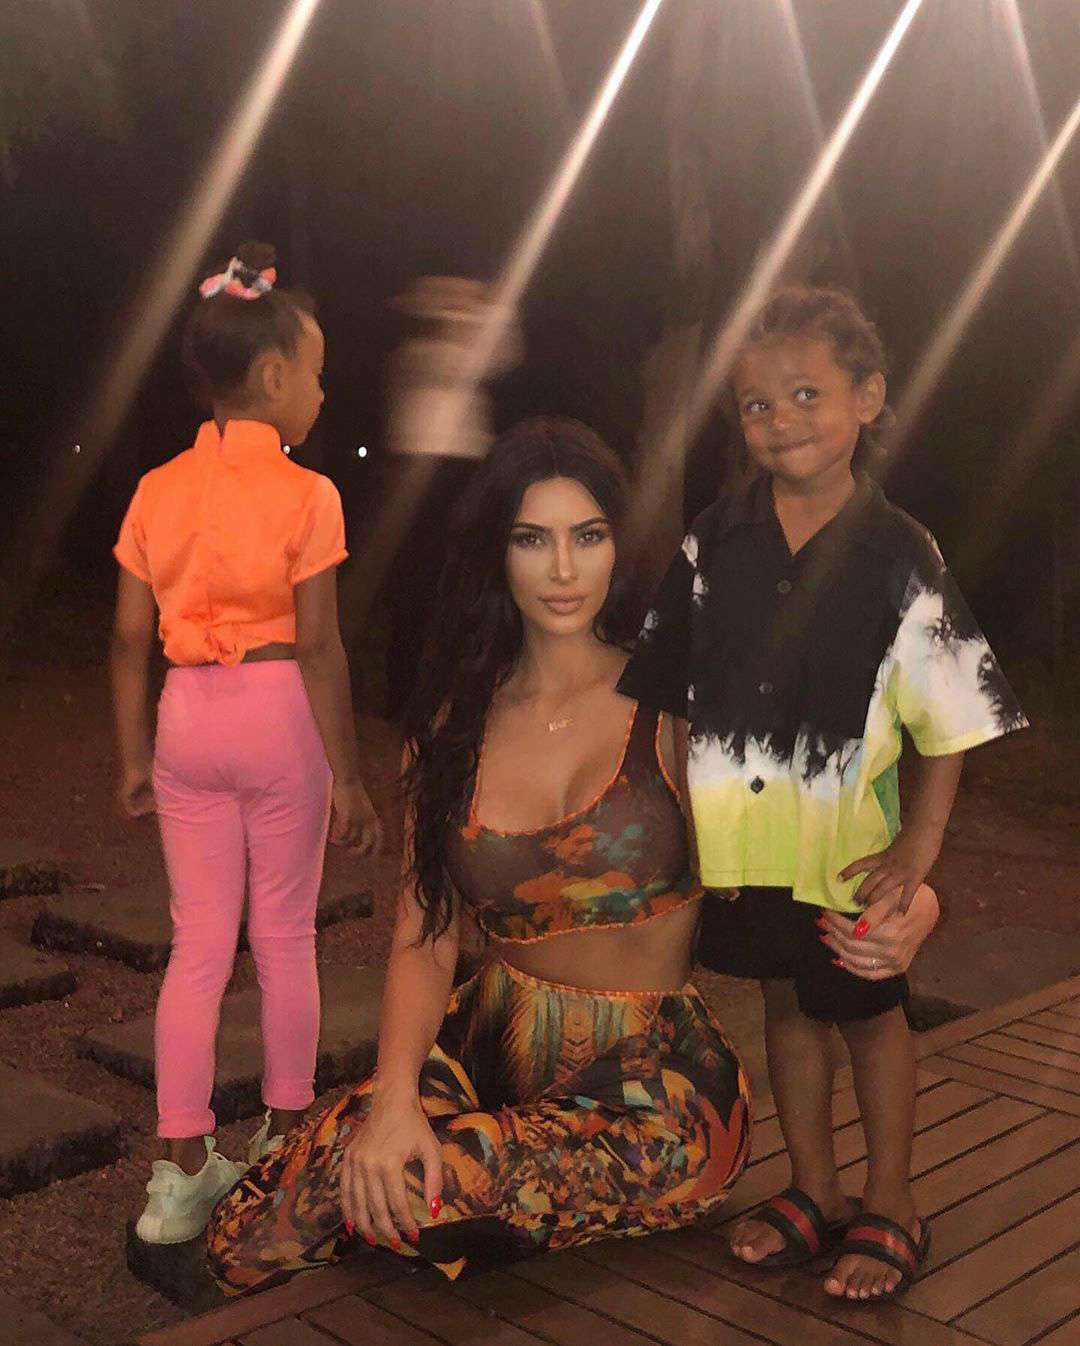 Kim Kardashian West